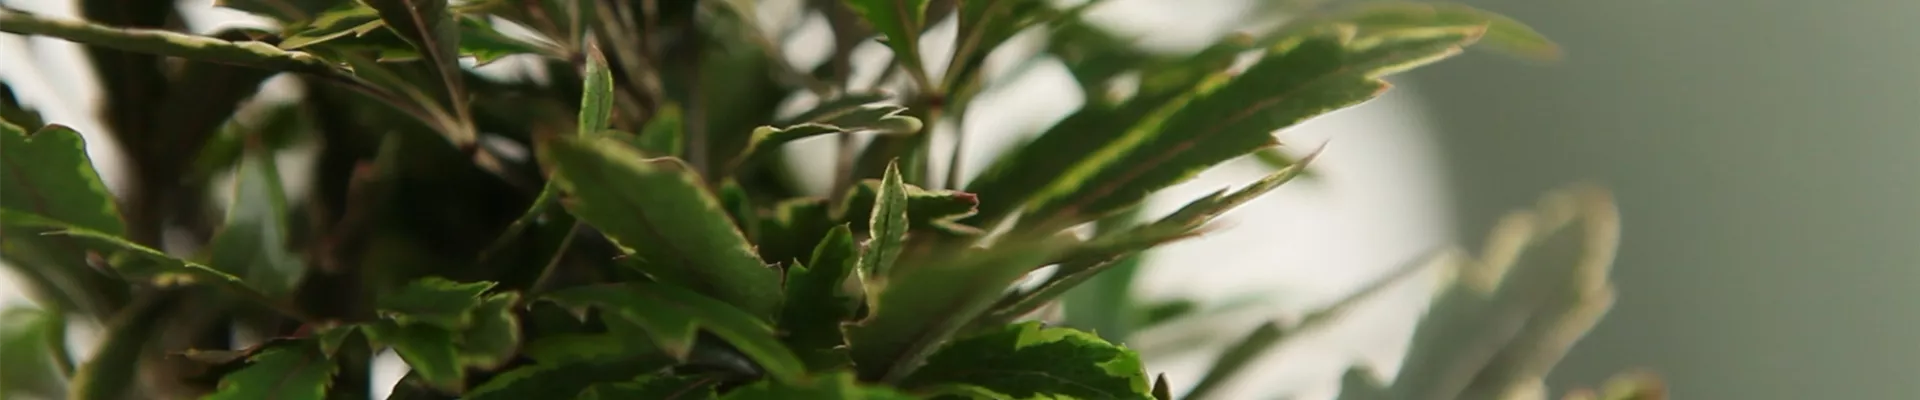 Fingeraralie - Einpflanzen in ein Gefäß (Thumbnail).jpg